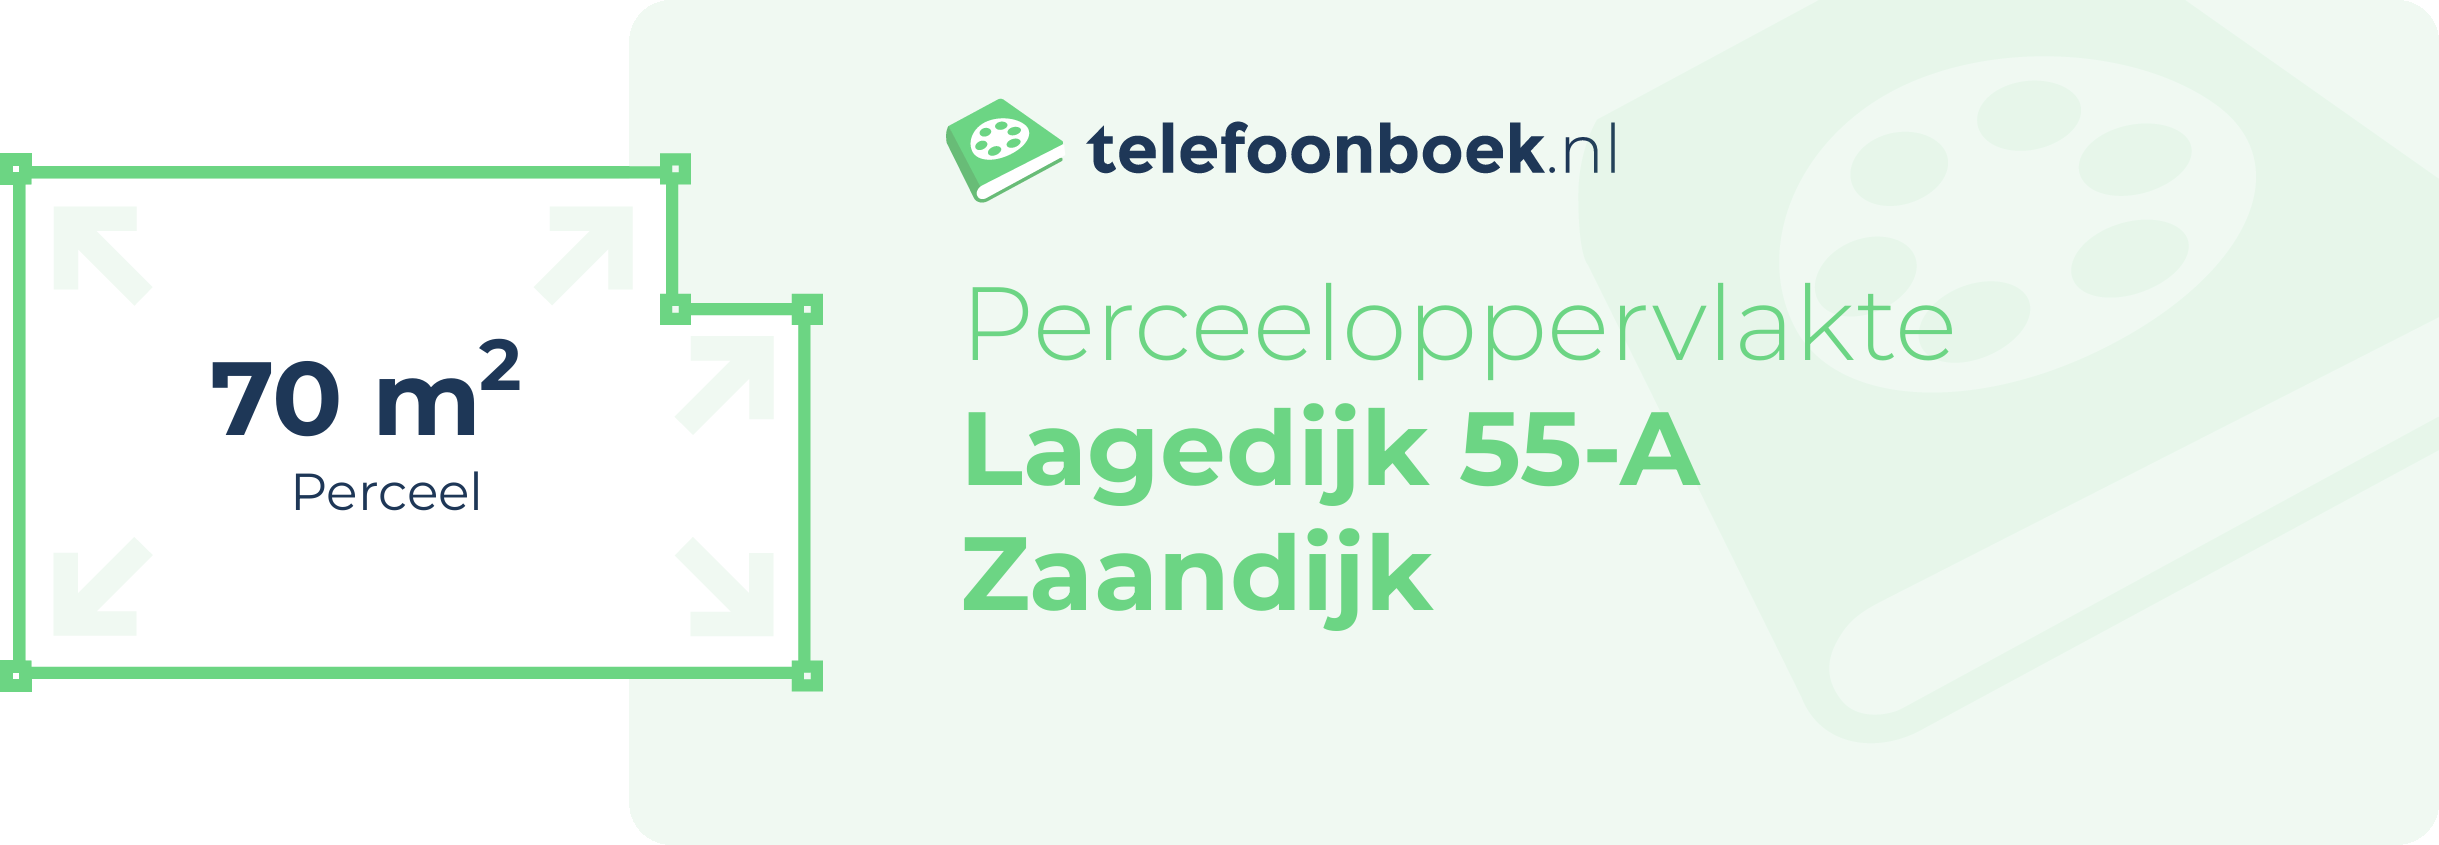 Perceeloppervlakte Lagedijk 55-A Zaandijk